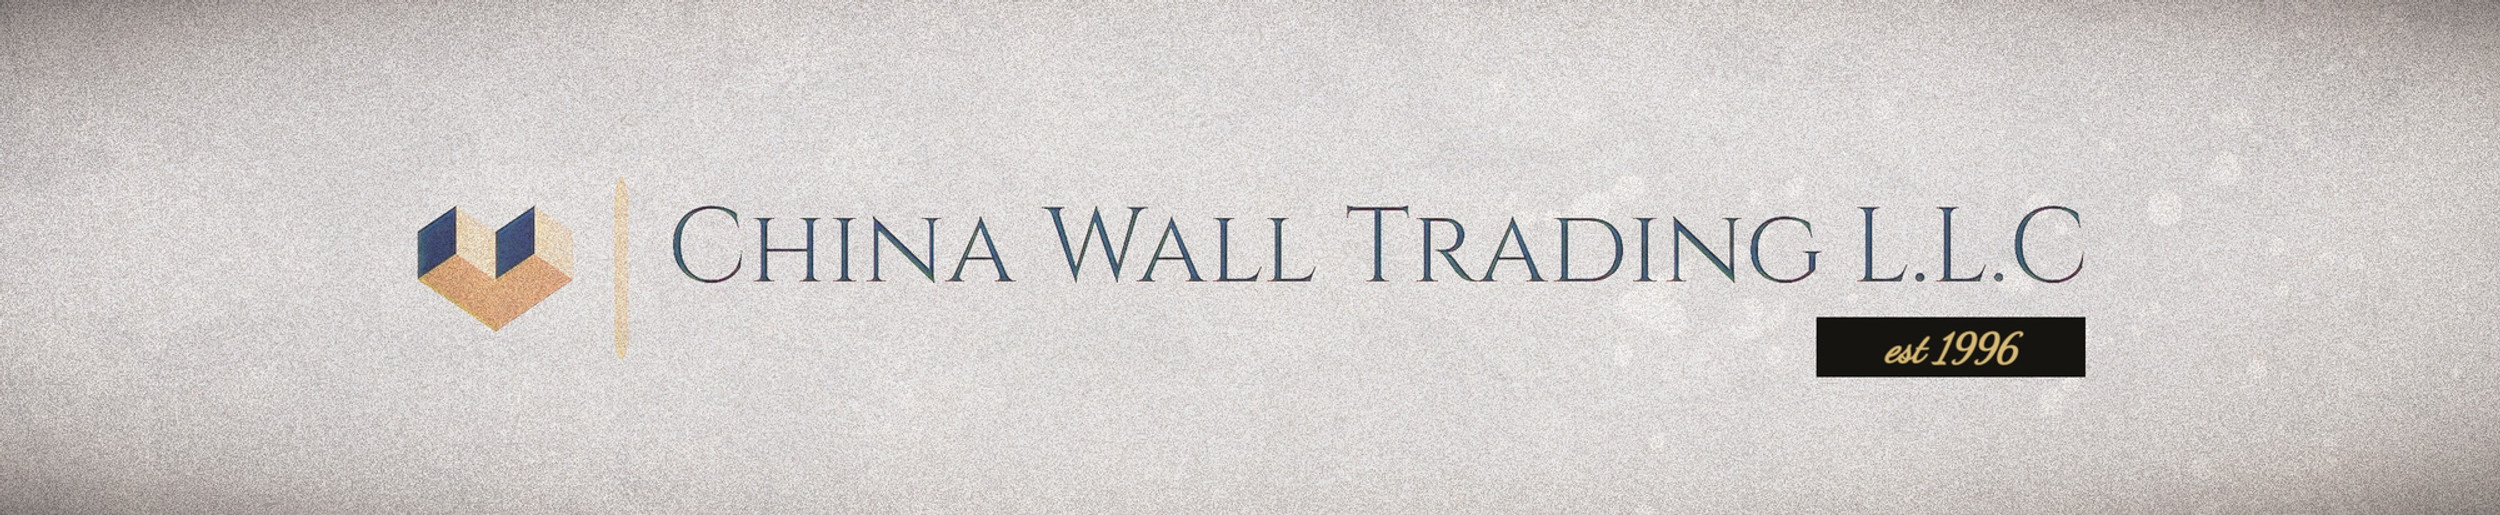 NEW ARRIVAL ITEMchina wall trading llc | China Wallchina wall uae